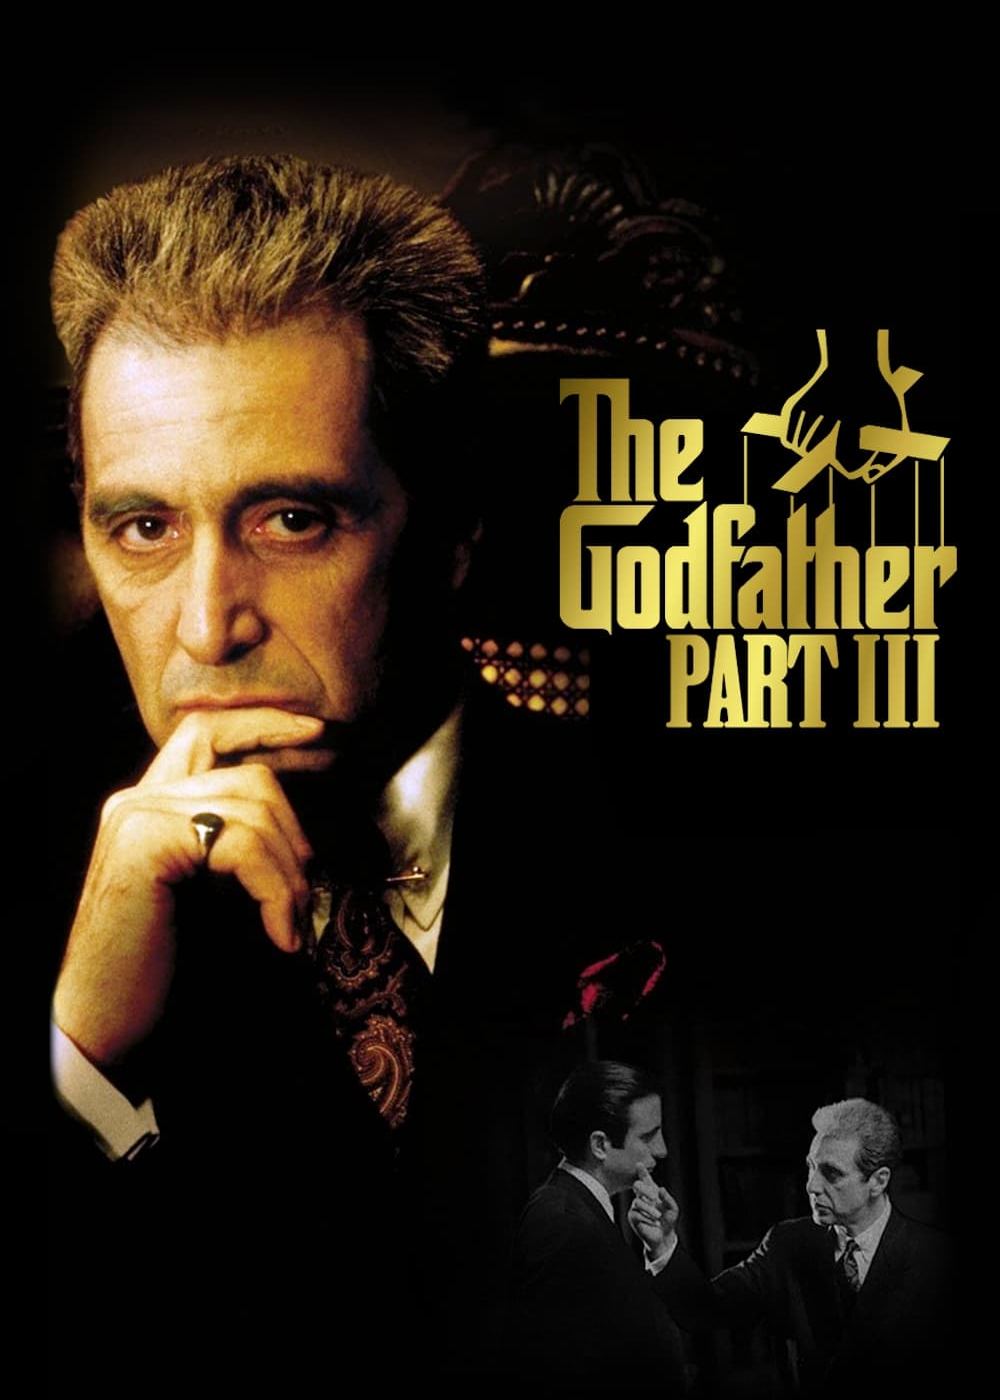 The Godfather: Part III - The Godfather: Part III